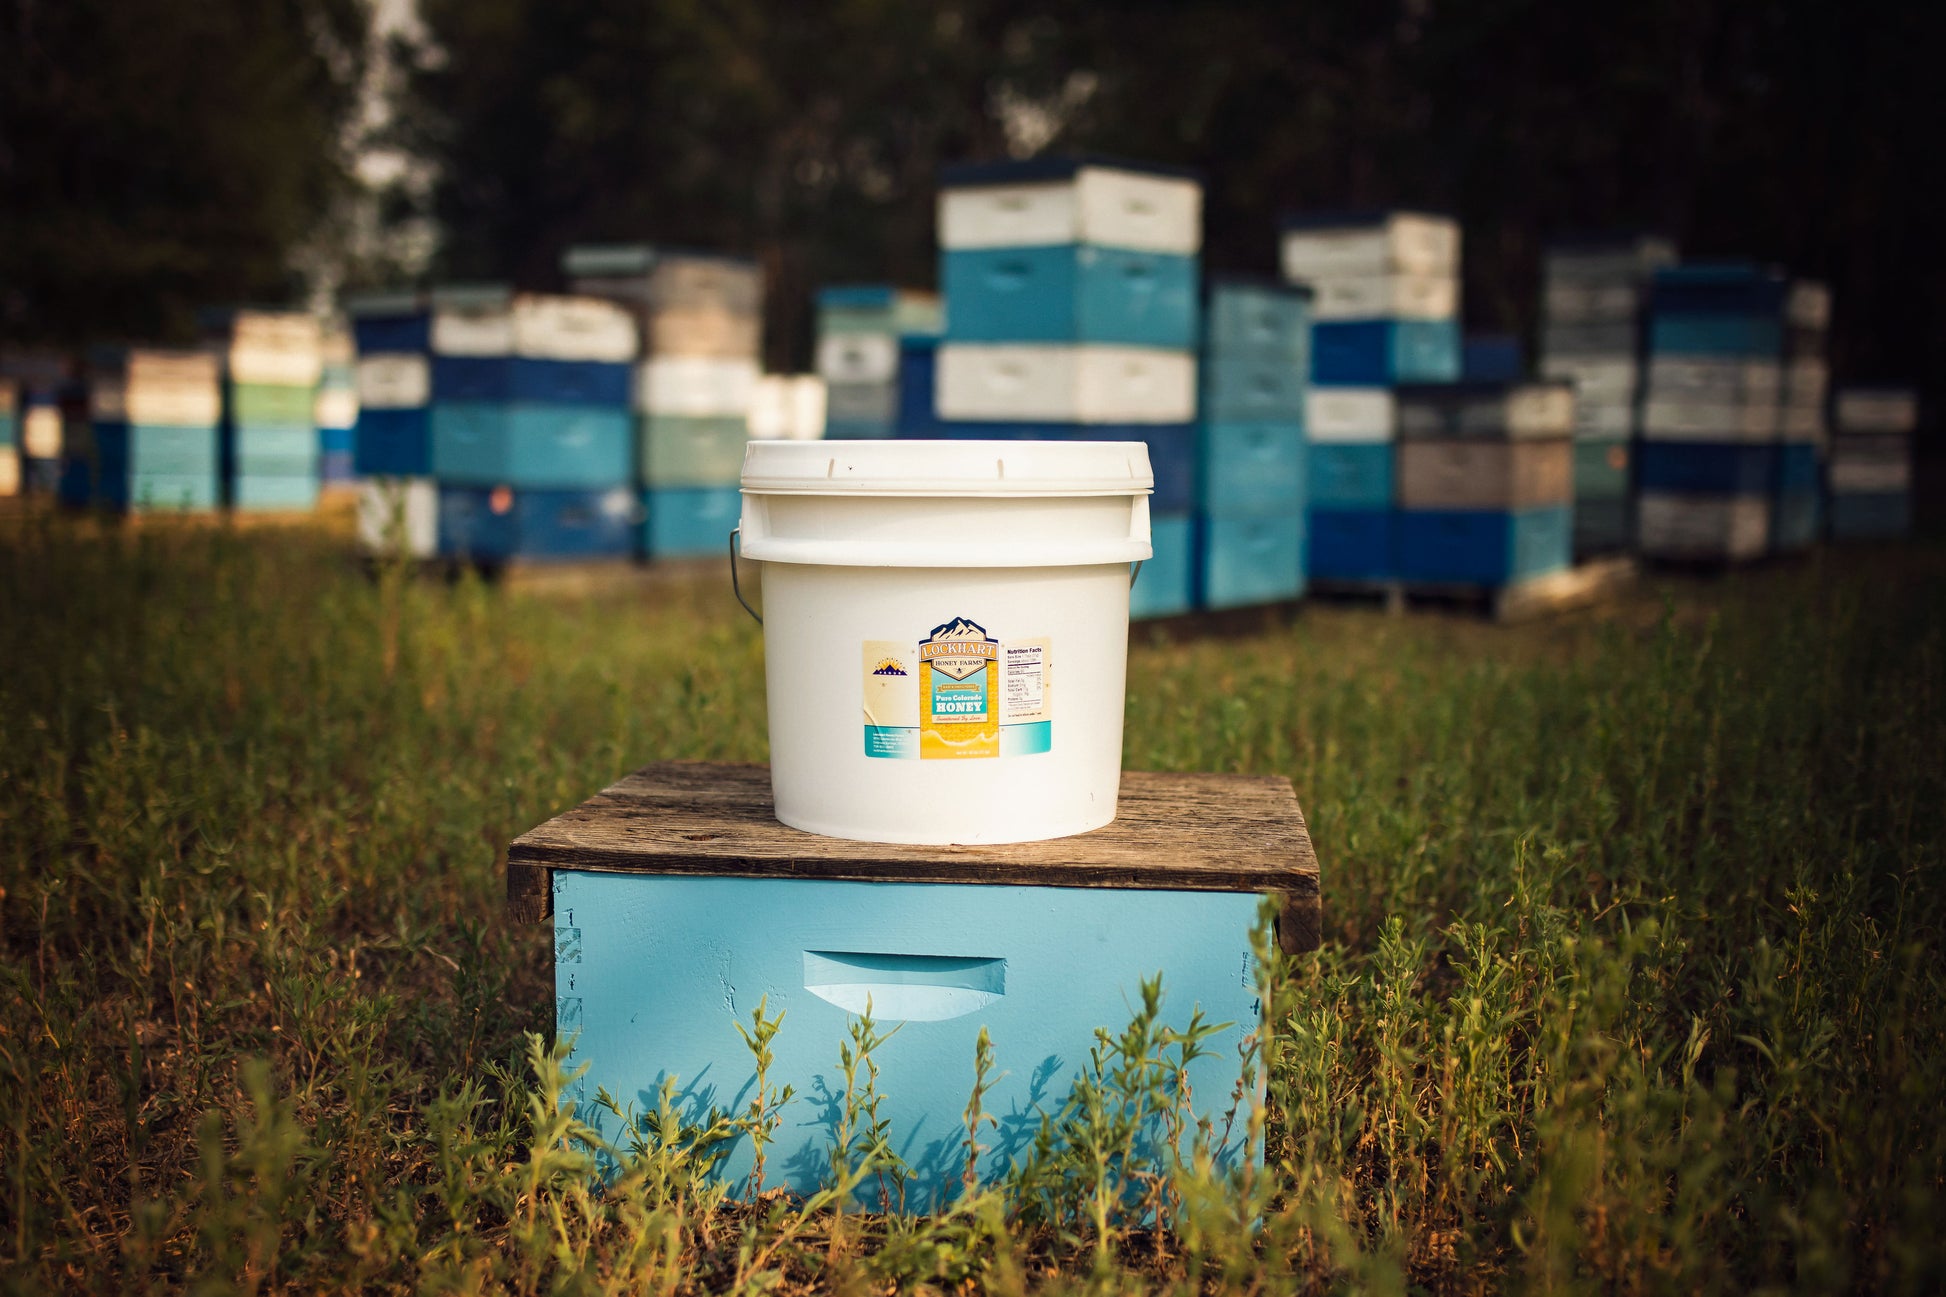 40 lb honey bucket - pure Colorado honey from Lockhart Honey Farms